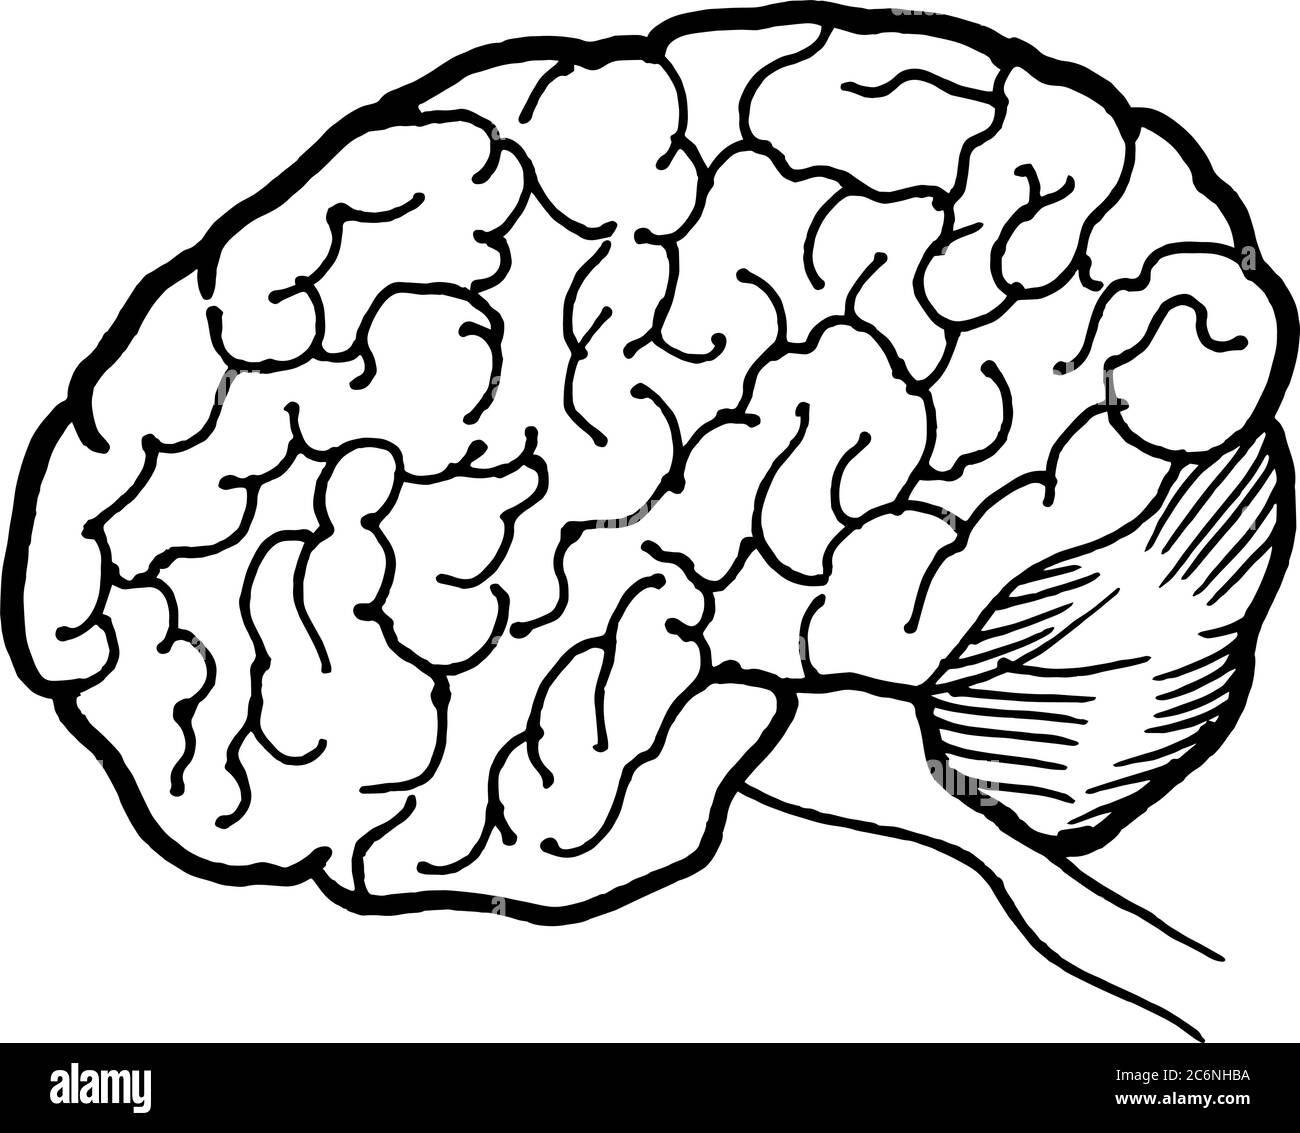 Lineare handgezeichnete Illustration des menschlichen Gehirns für Logo oder Banner / Design-Vorlage Stock Vektor